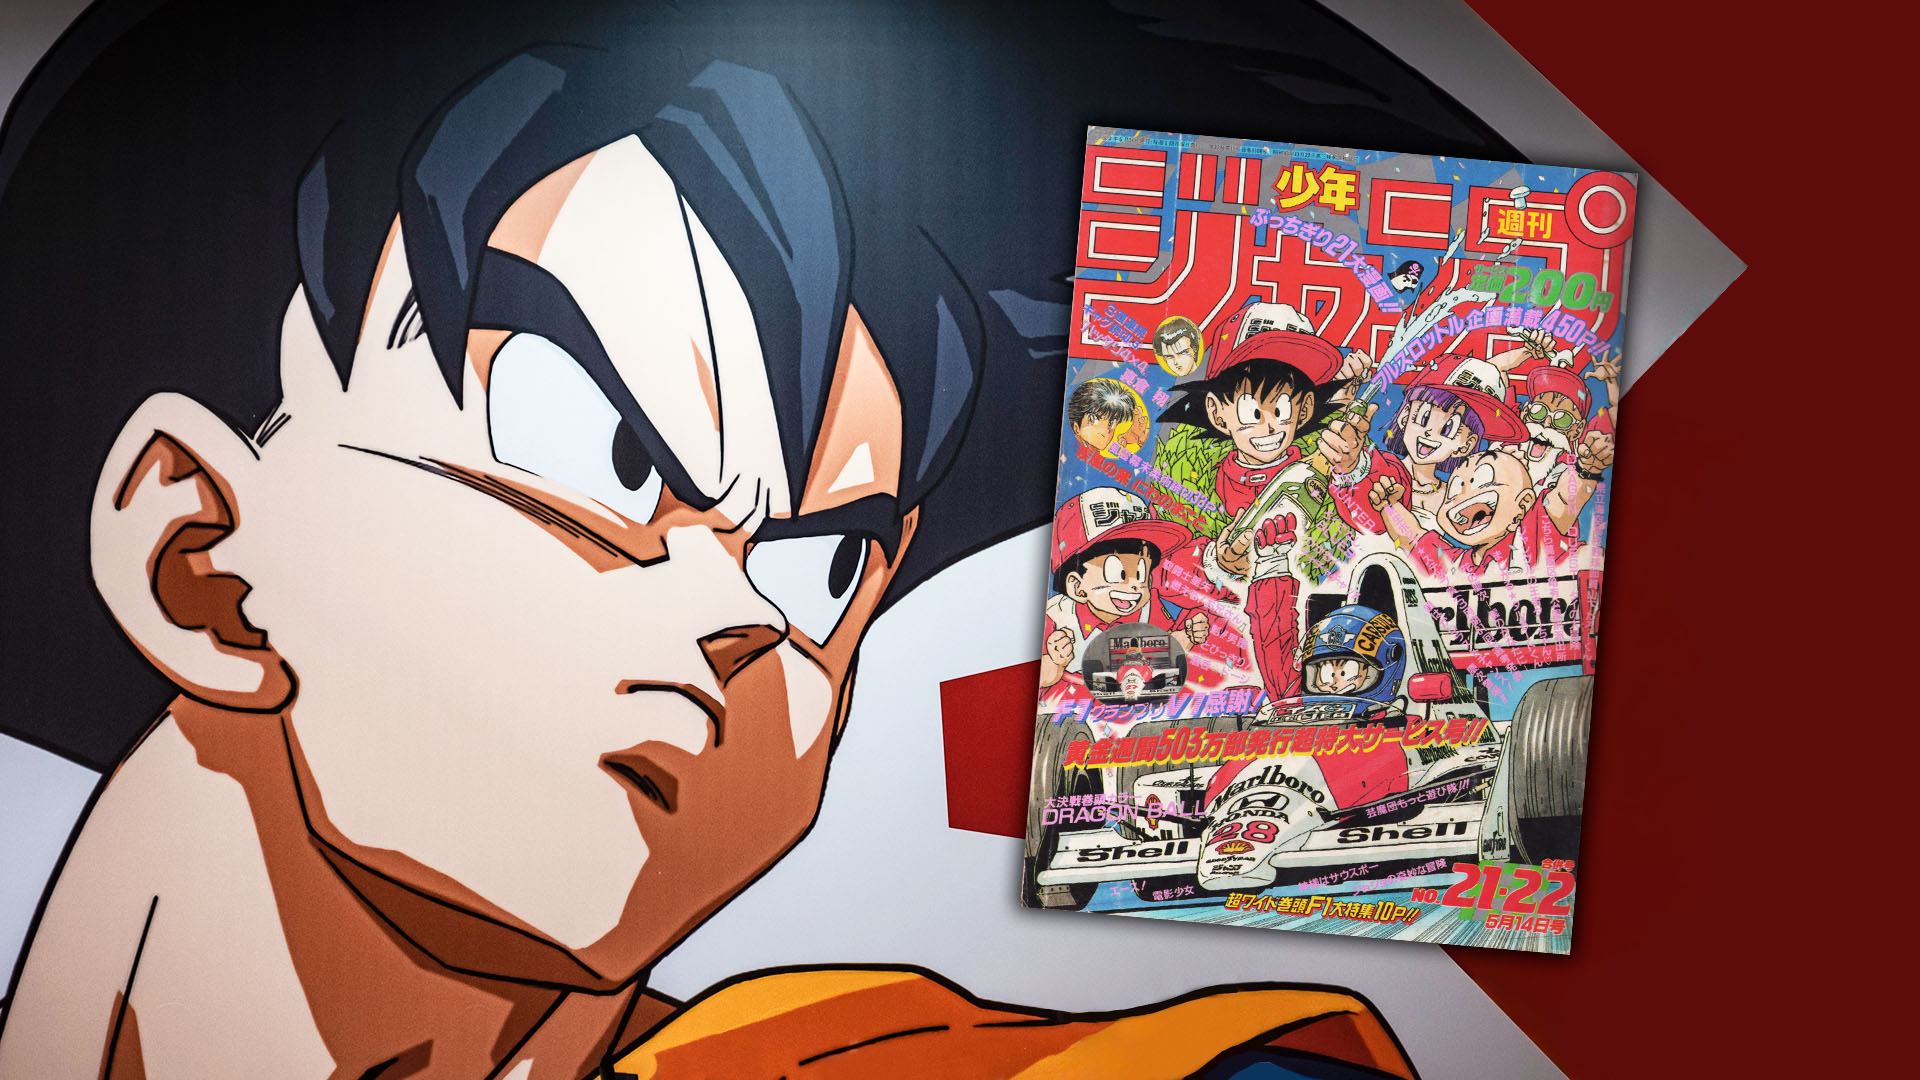 La revista, que todavía perdura en nuestros días, fue el papel que vio nacer a éxitos como ‘Dr. Slump’, ‘One Piece’, ‘Naruto’ y ‘Dragon Ball’. La segunda decisión, la más ambiciosa, fue colocar a sus autores más exitosos a plasmar cómo veían la F1.